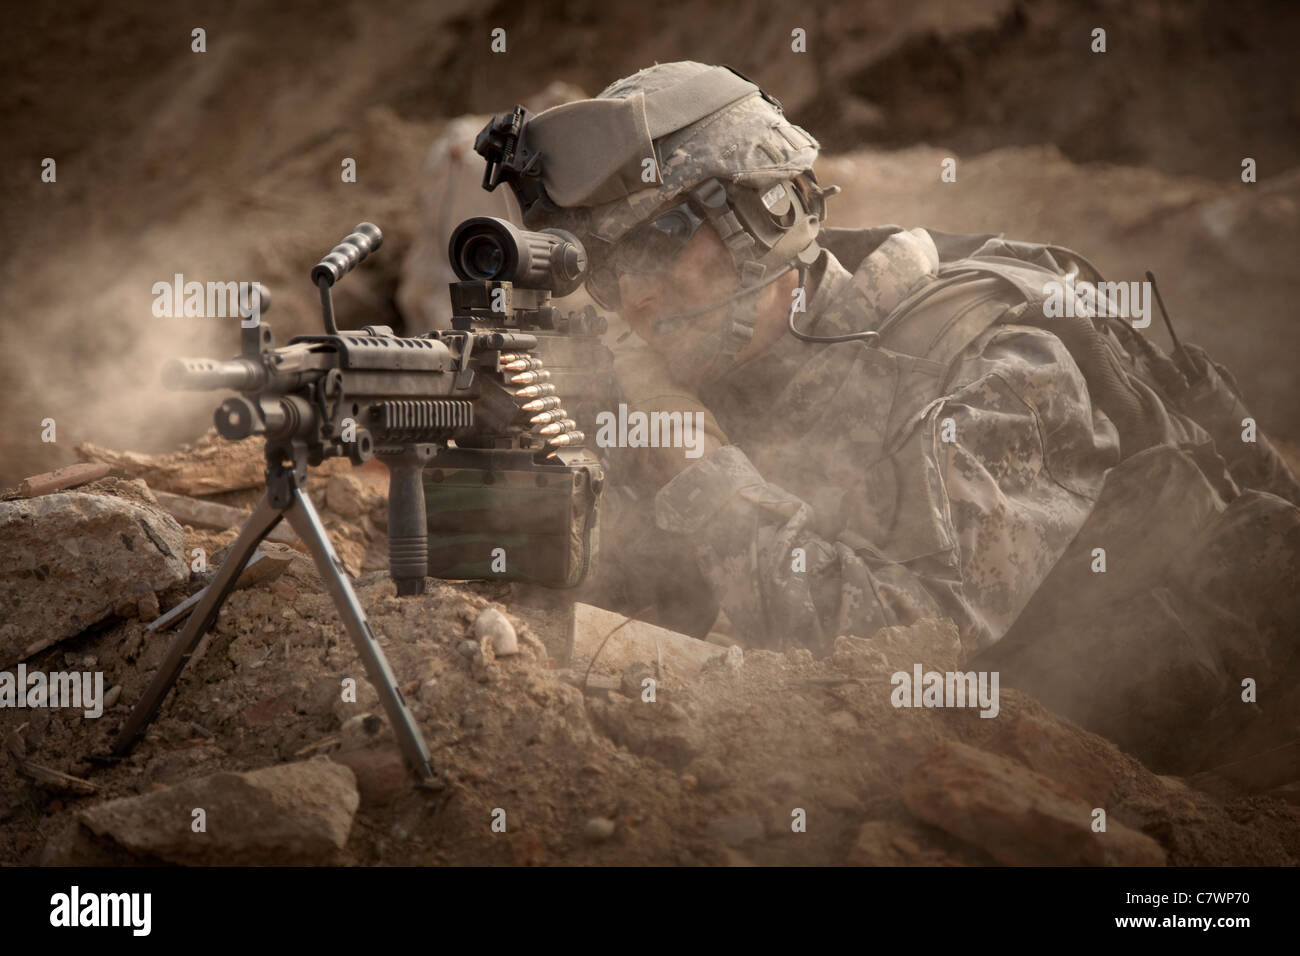 US Army Ranger in Afghanistan bekämpfen Szene. Stockfoto